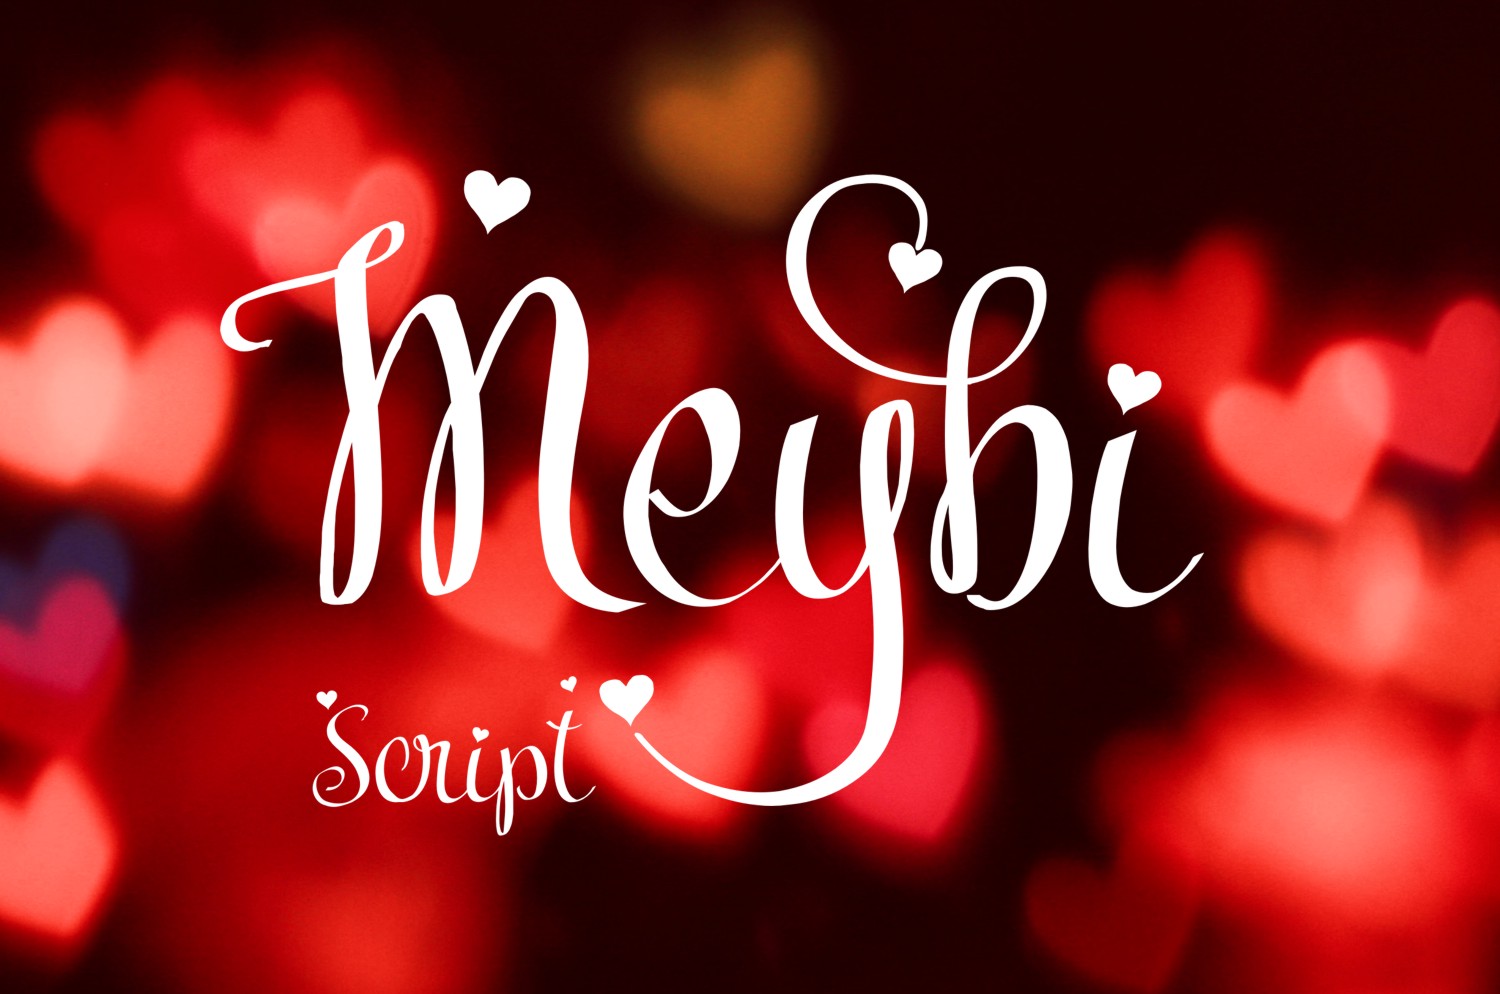 Meybi Font